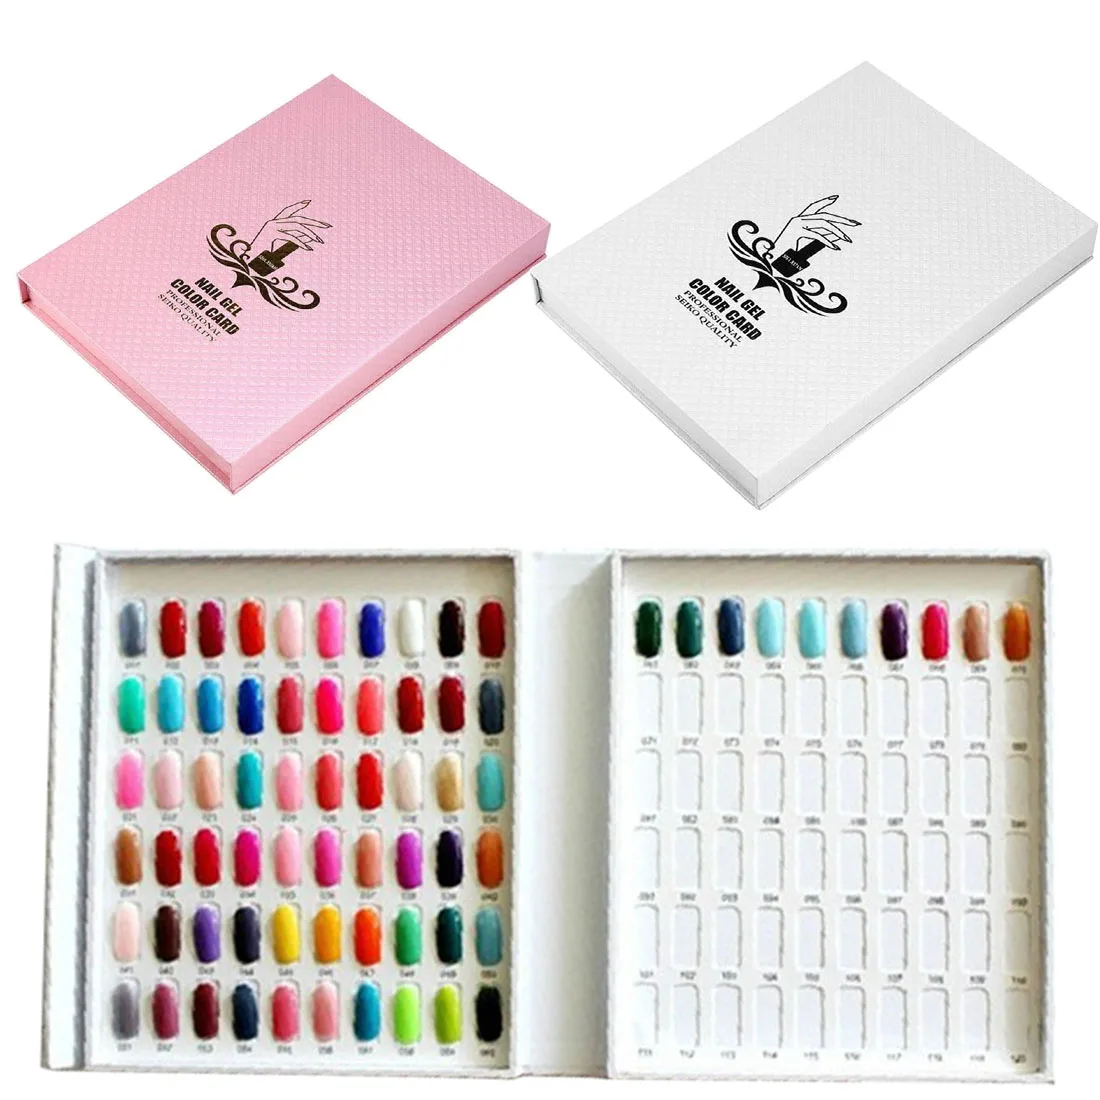 Цветная витрина для лака для ногтей, бумага для клея, цветная Палитра для ногтей, образец, 216/120 цветов, оборудование для дизайна ногтей